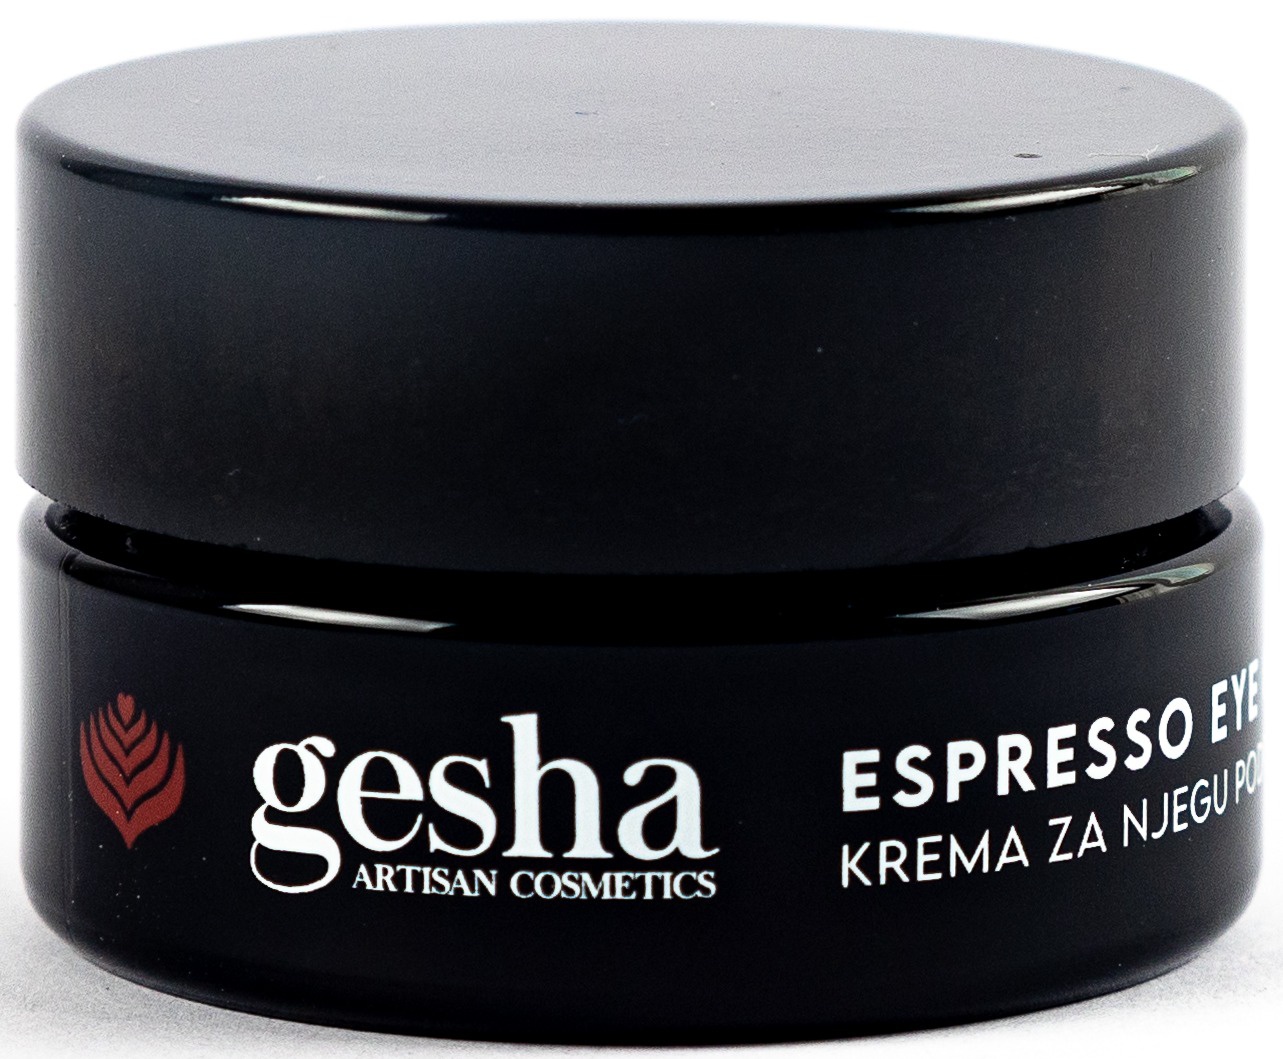 Gesha Espresso Eye Cream